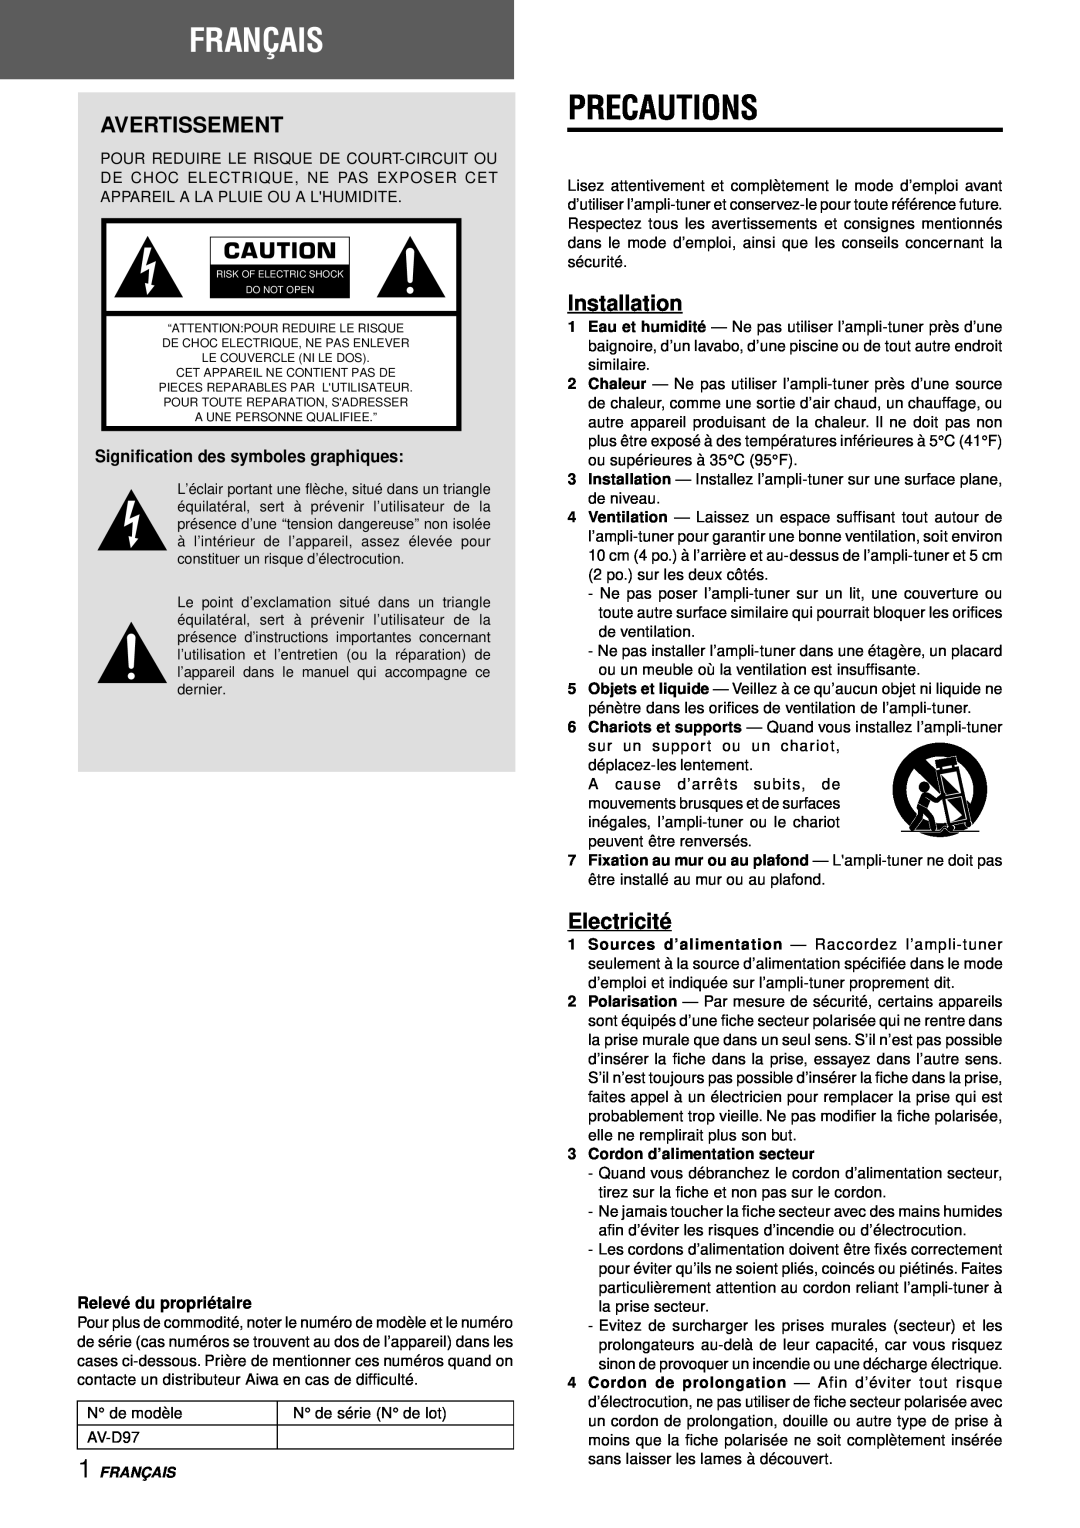 Aiwa AV-D97 manual Français, Avertissement, Electricité, Signification des symboles graphiques, Relevé du propriétaire 